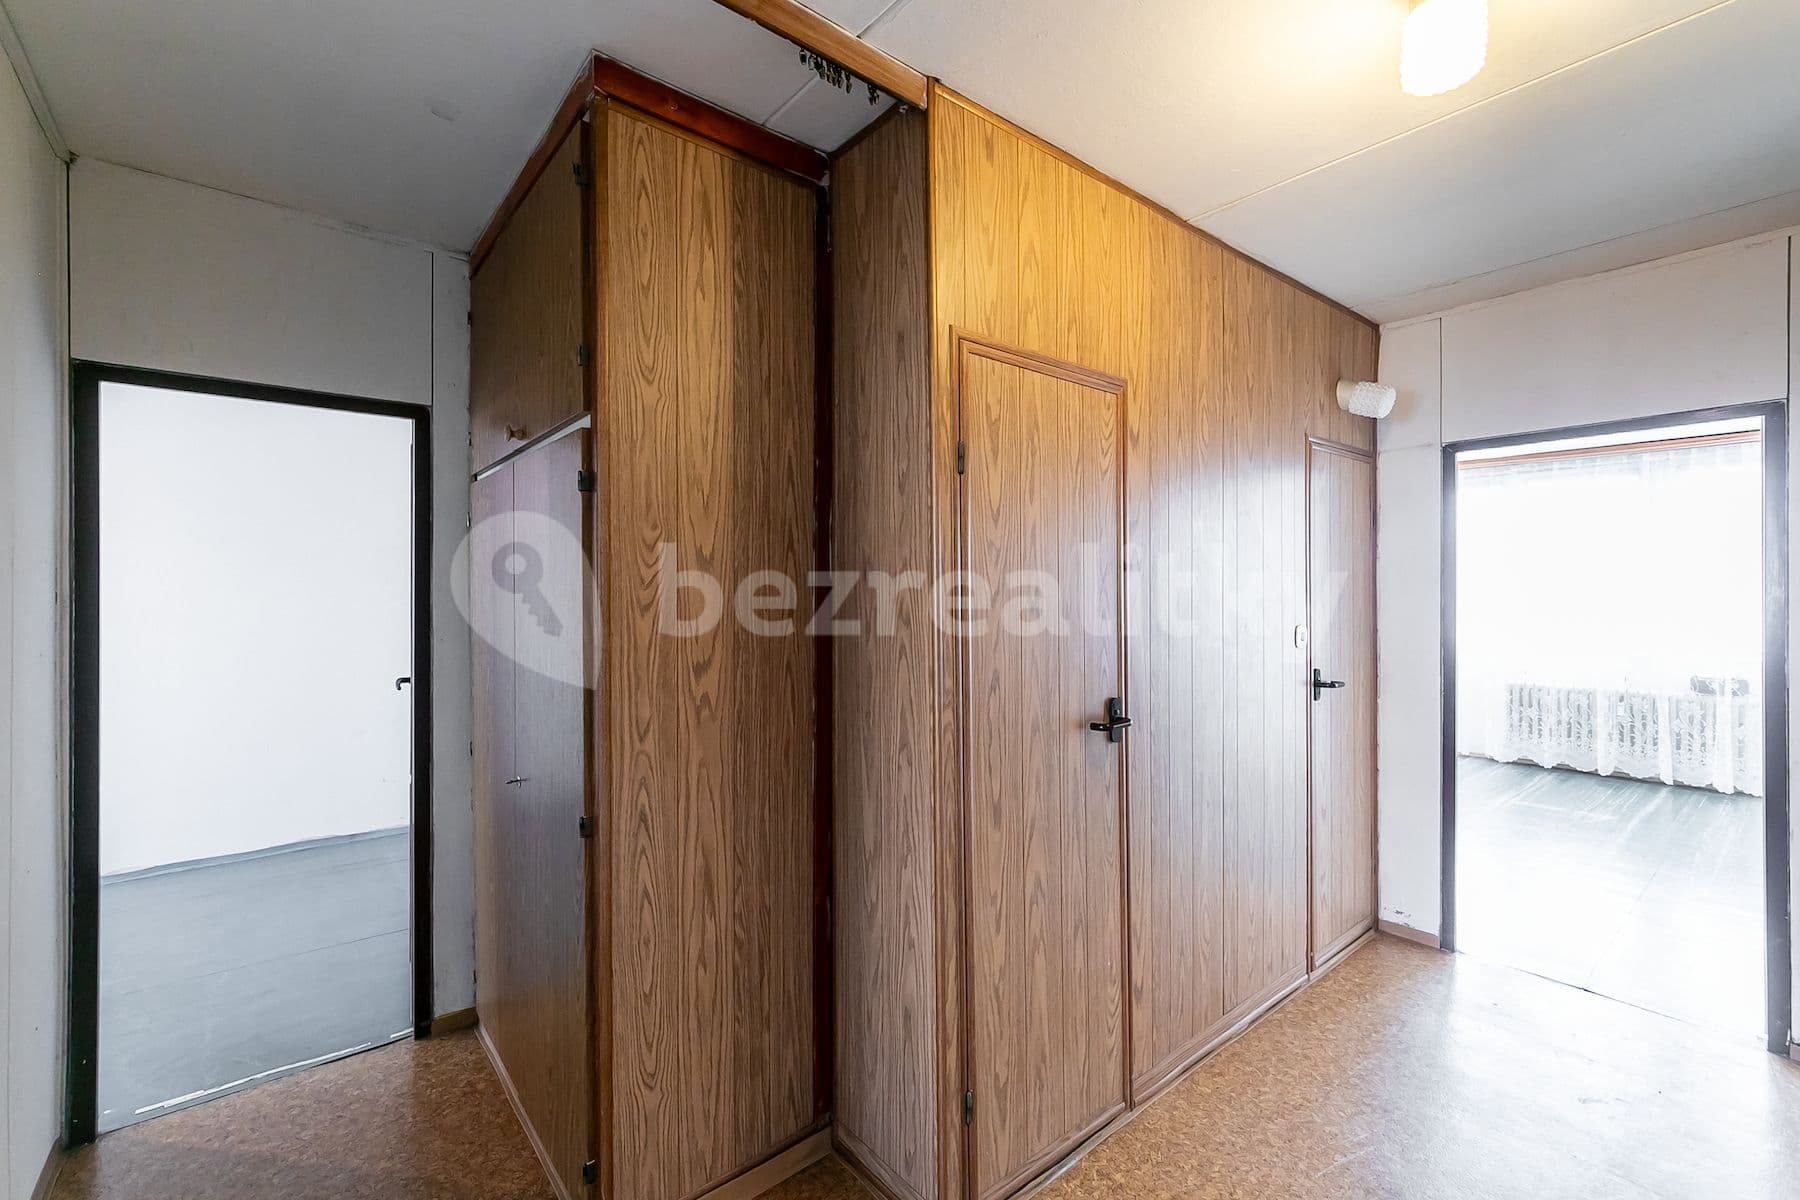 3 bedroom flat for sale, 69 m², Jetelová, Prague, Prague